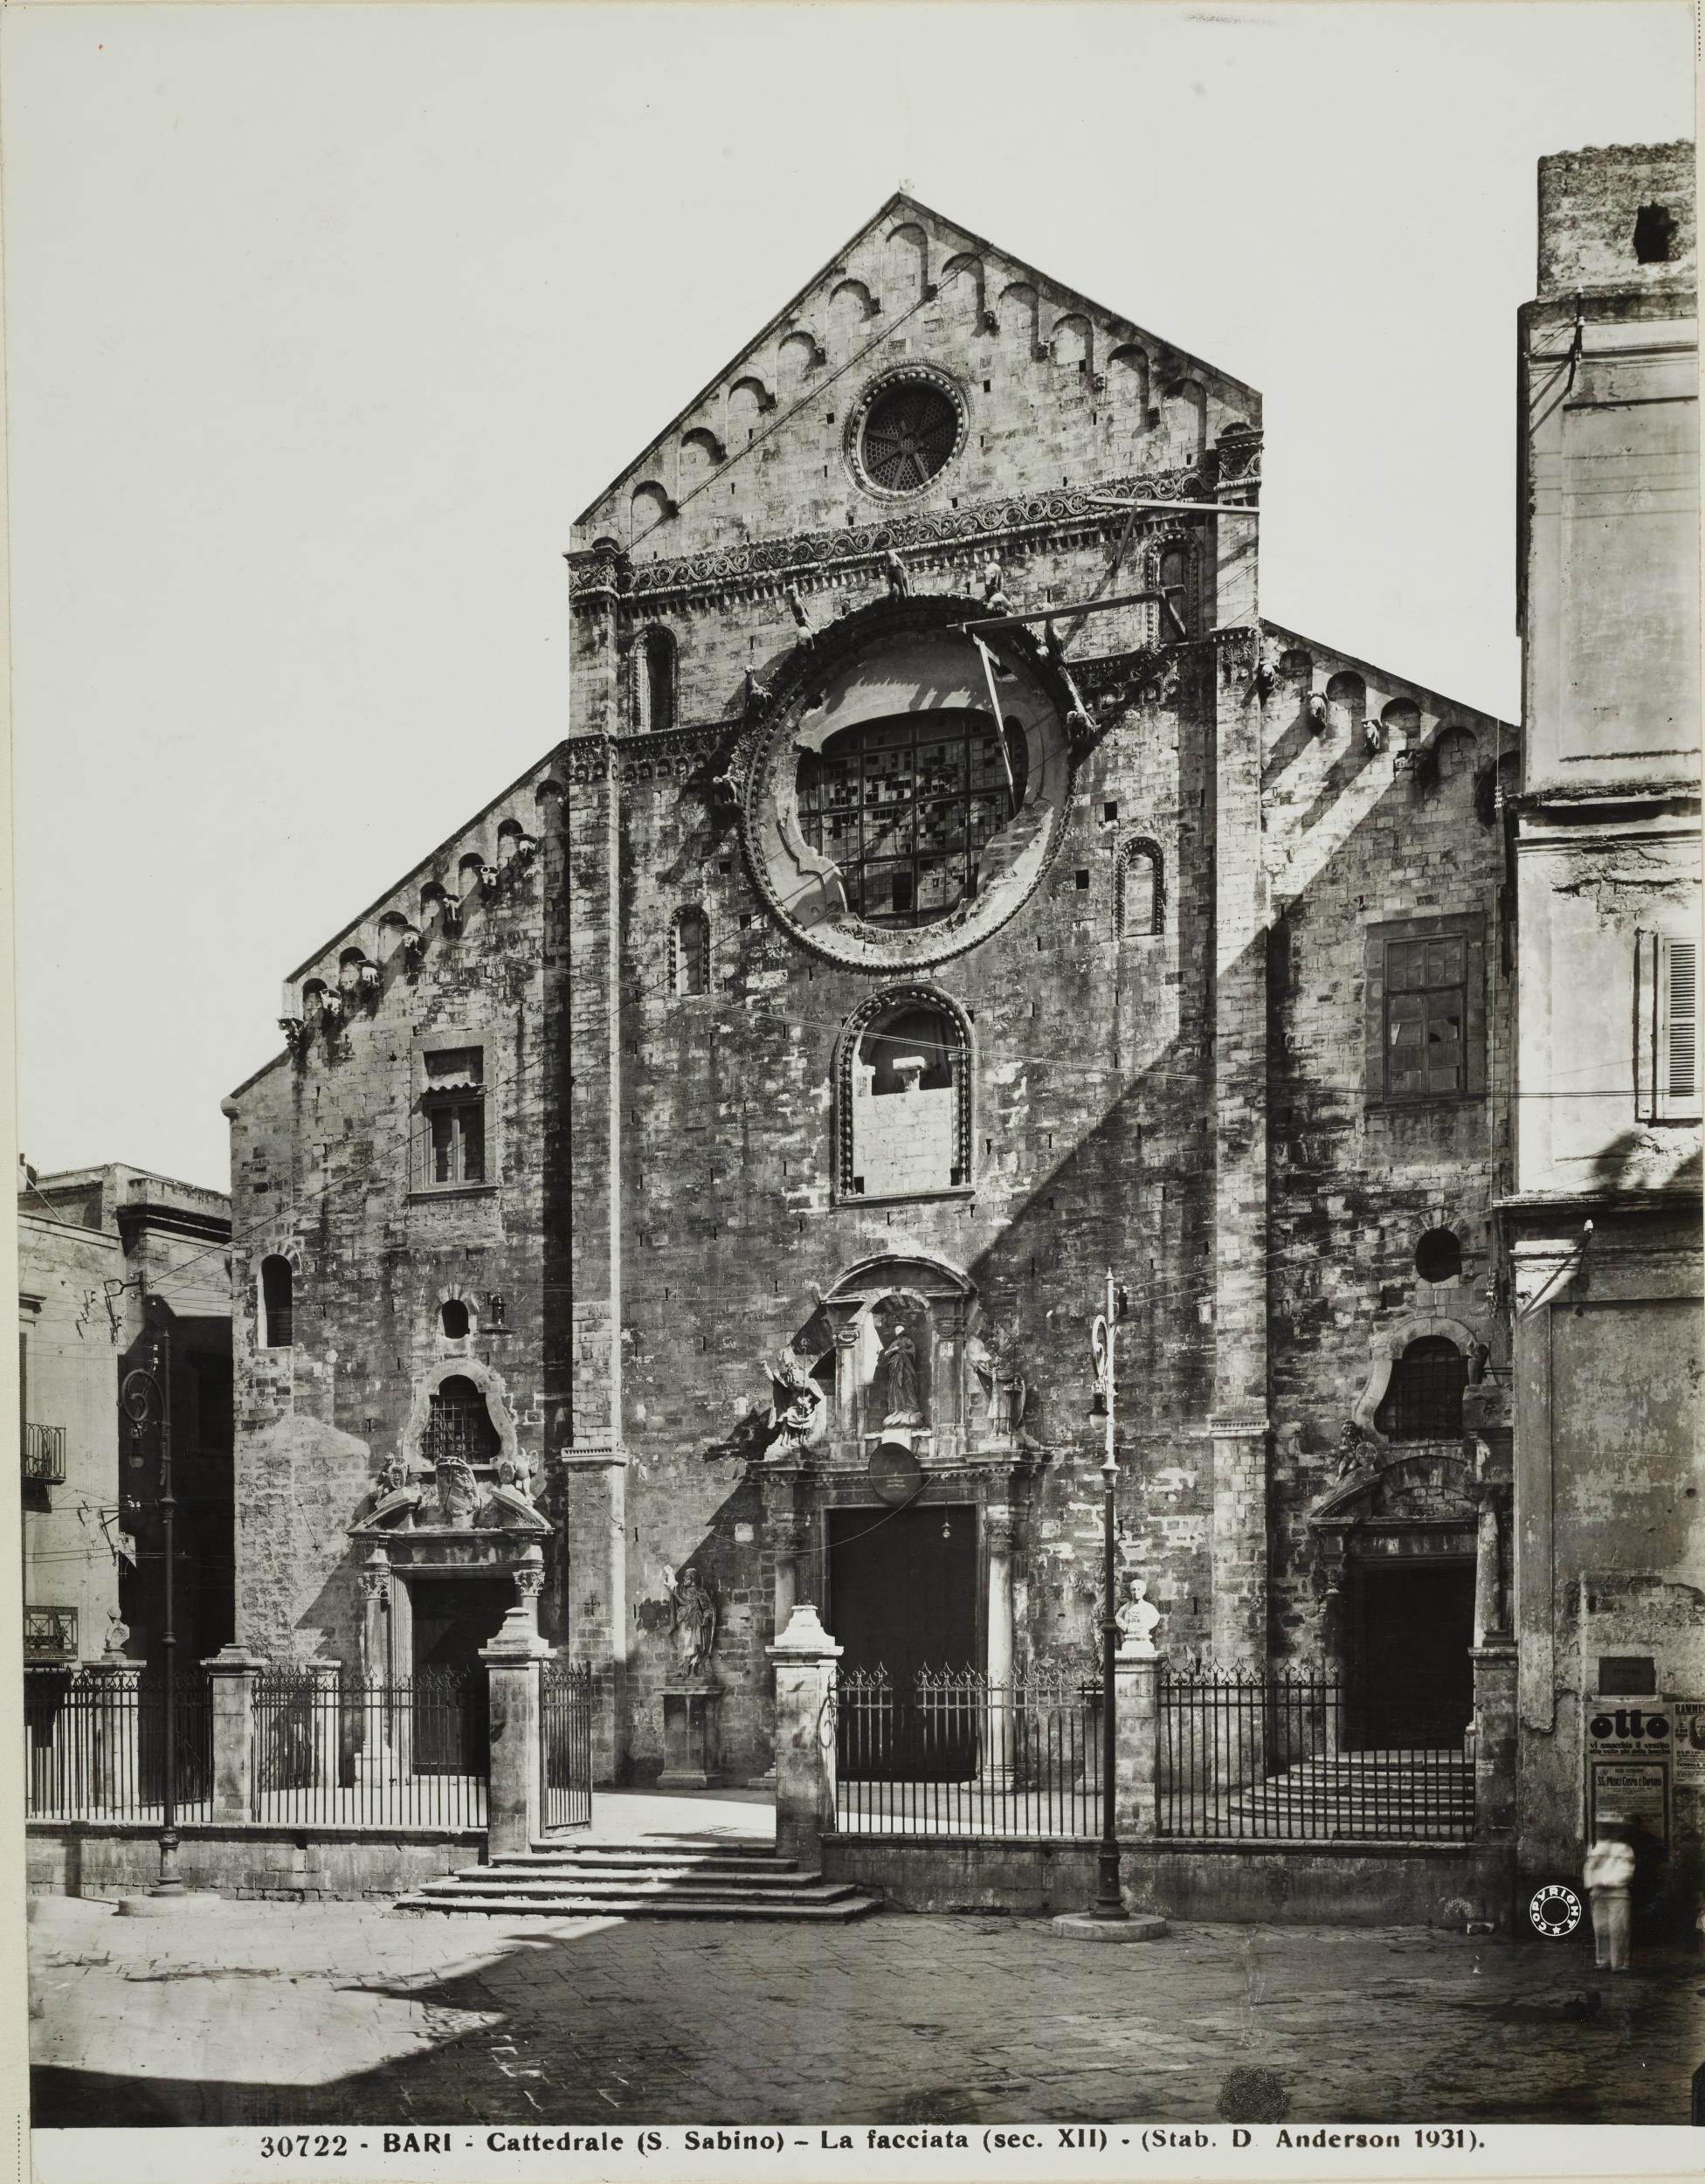 Anderson, Bari - Cattedrale di S. Sabino, facciata, 1931, gelatina ai sali d'argento/carta, MPI136589